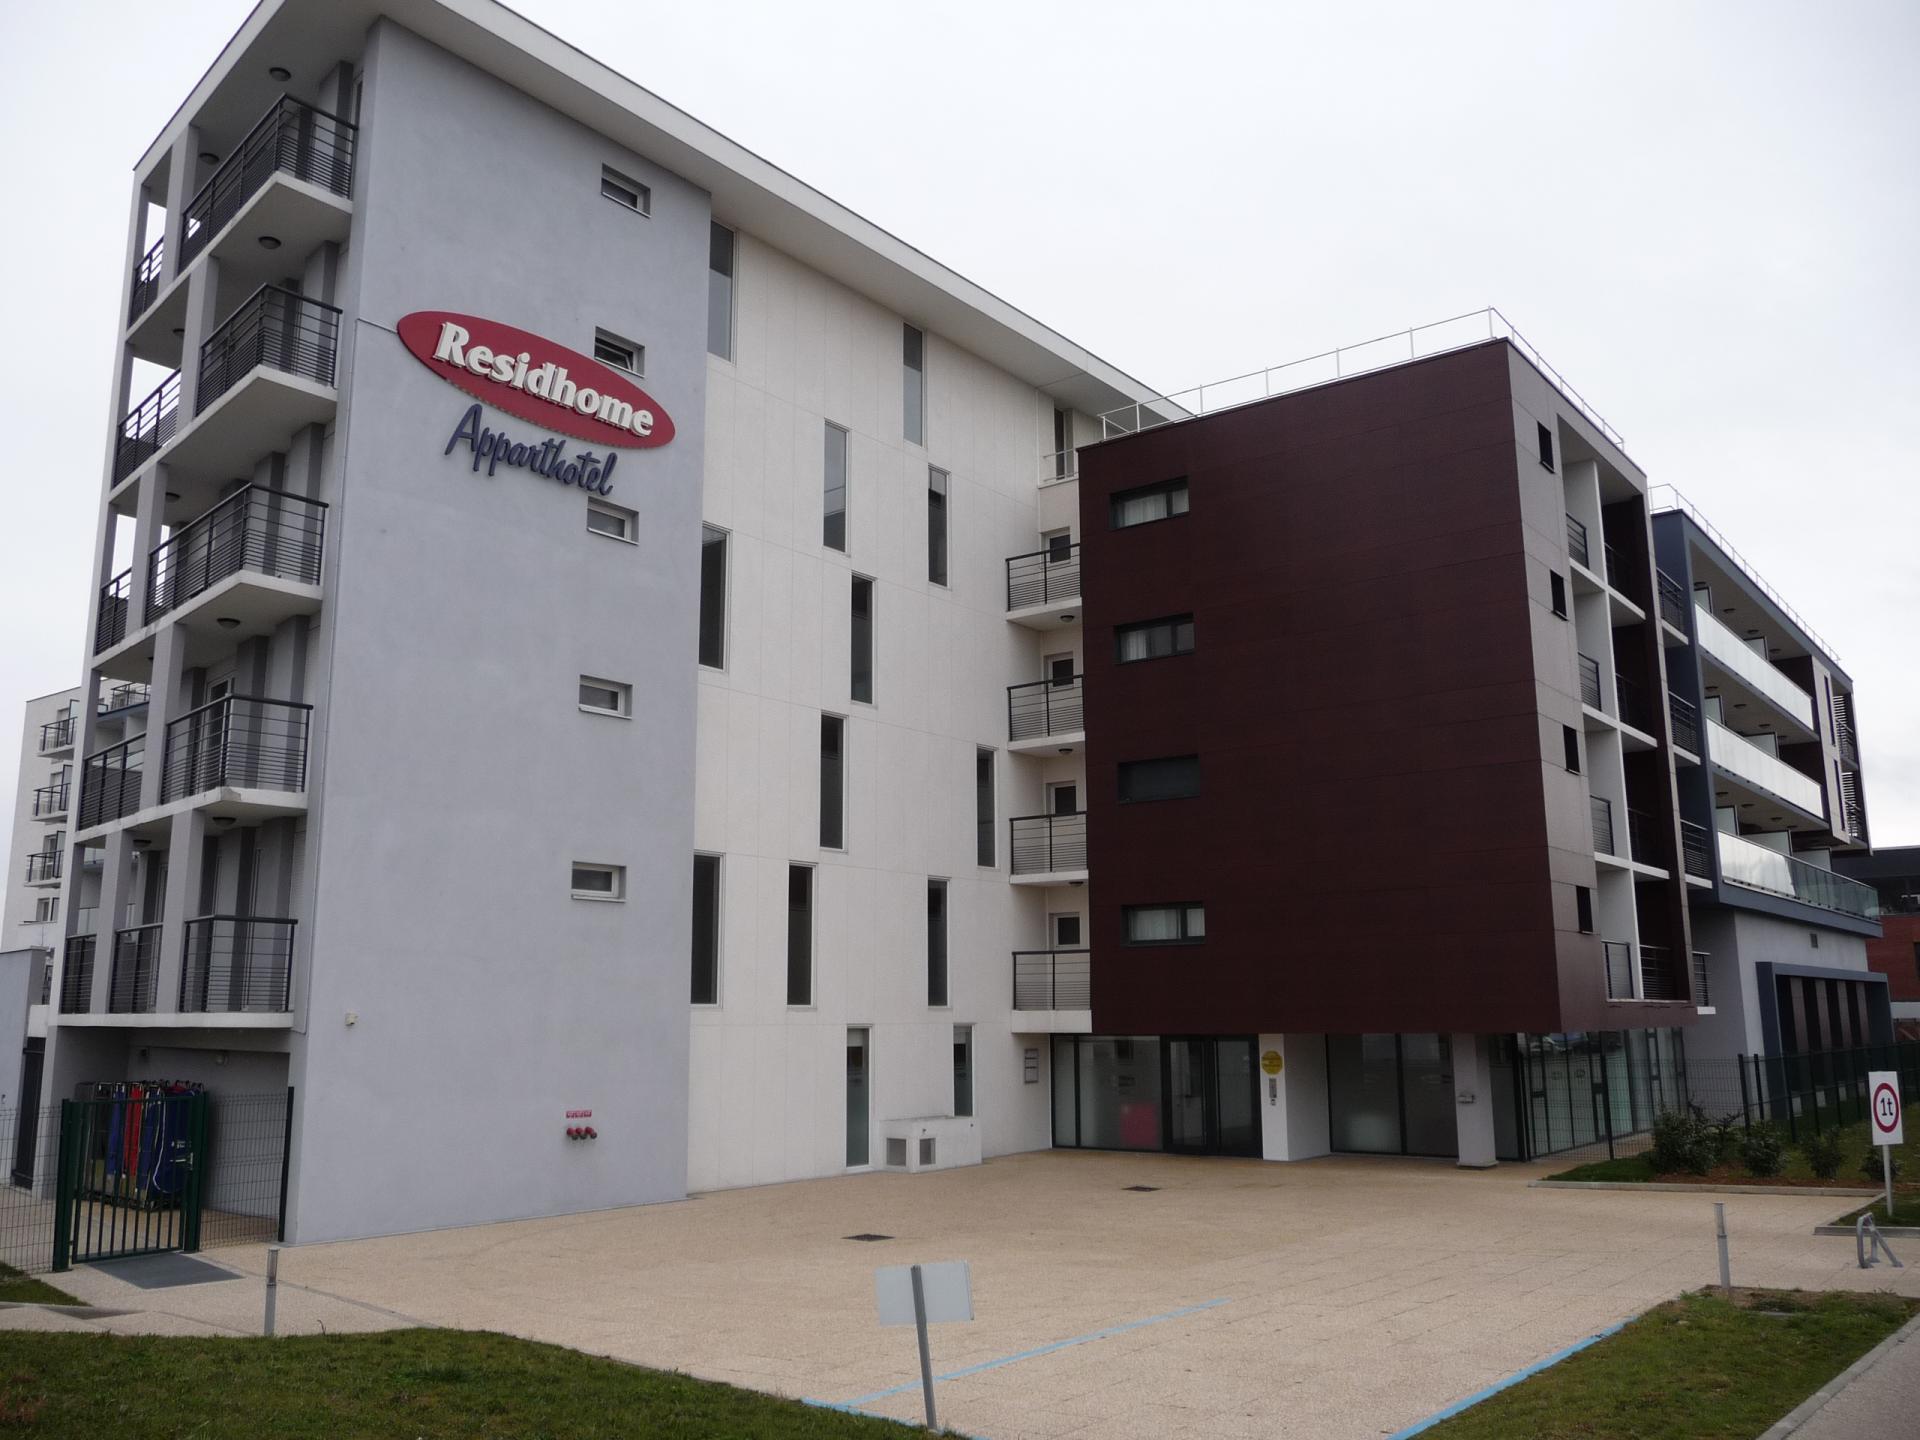 Vente studio - résidence de tourisme RESIDE ETUDES classée 3 étoiles à Carrières-sur-Seine